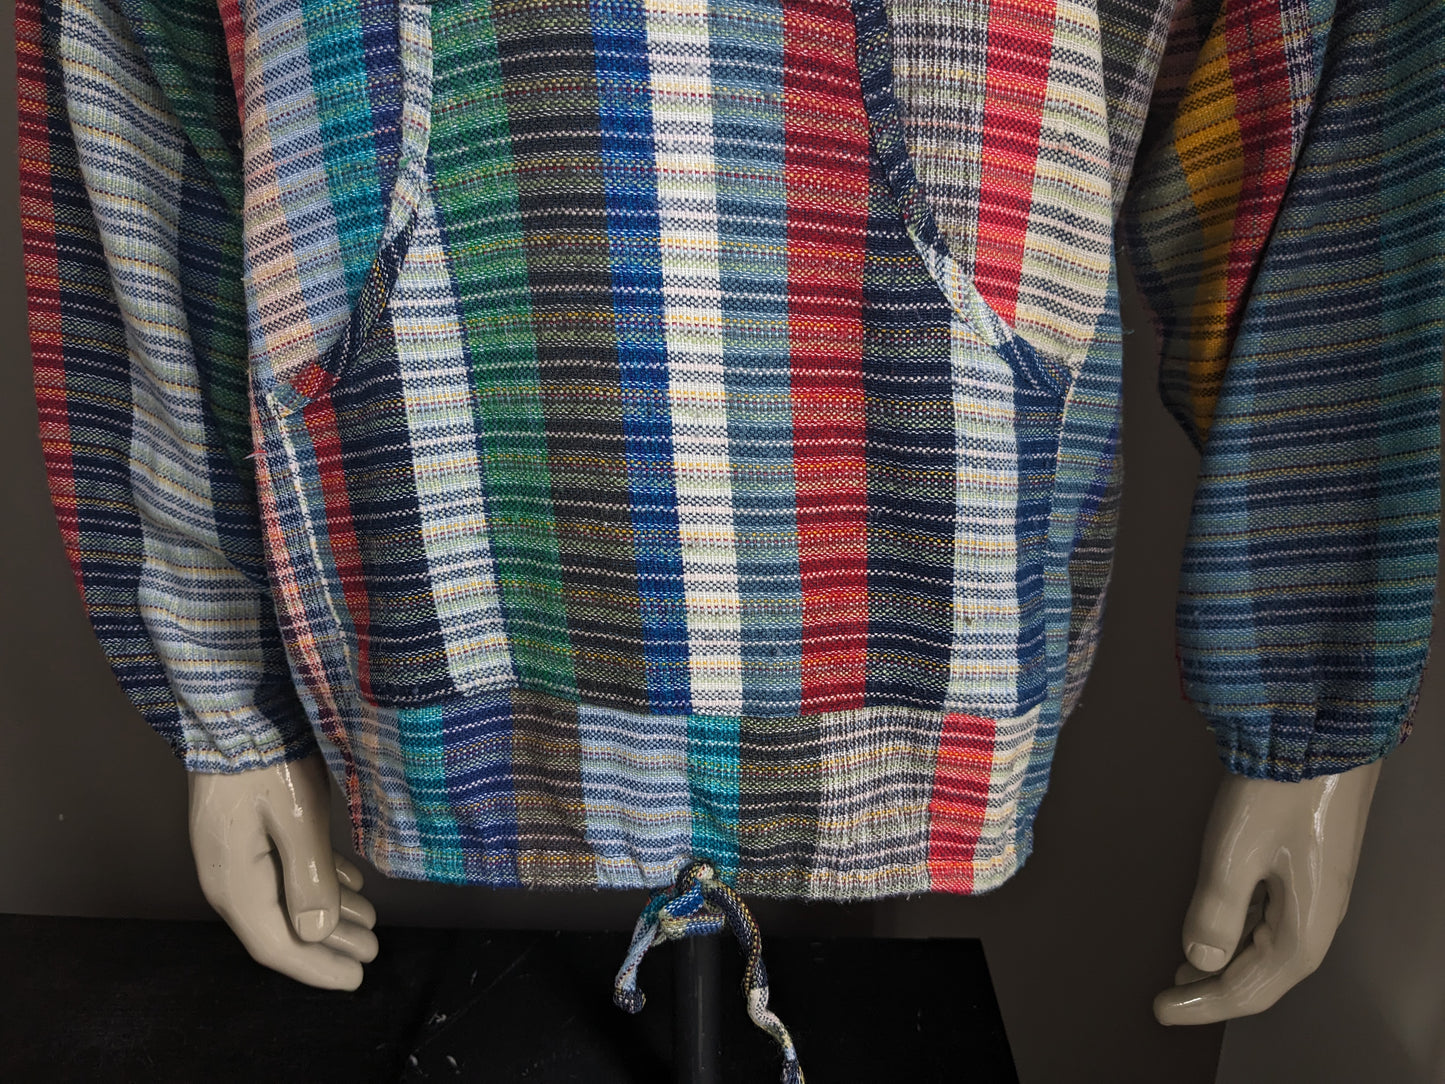 Camicia vintage con mao / agricoltore / collare in piedi. Motivo colorato. Dimensione 2xl / xxl.